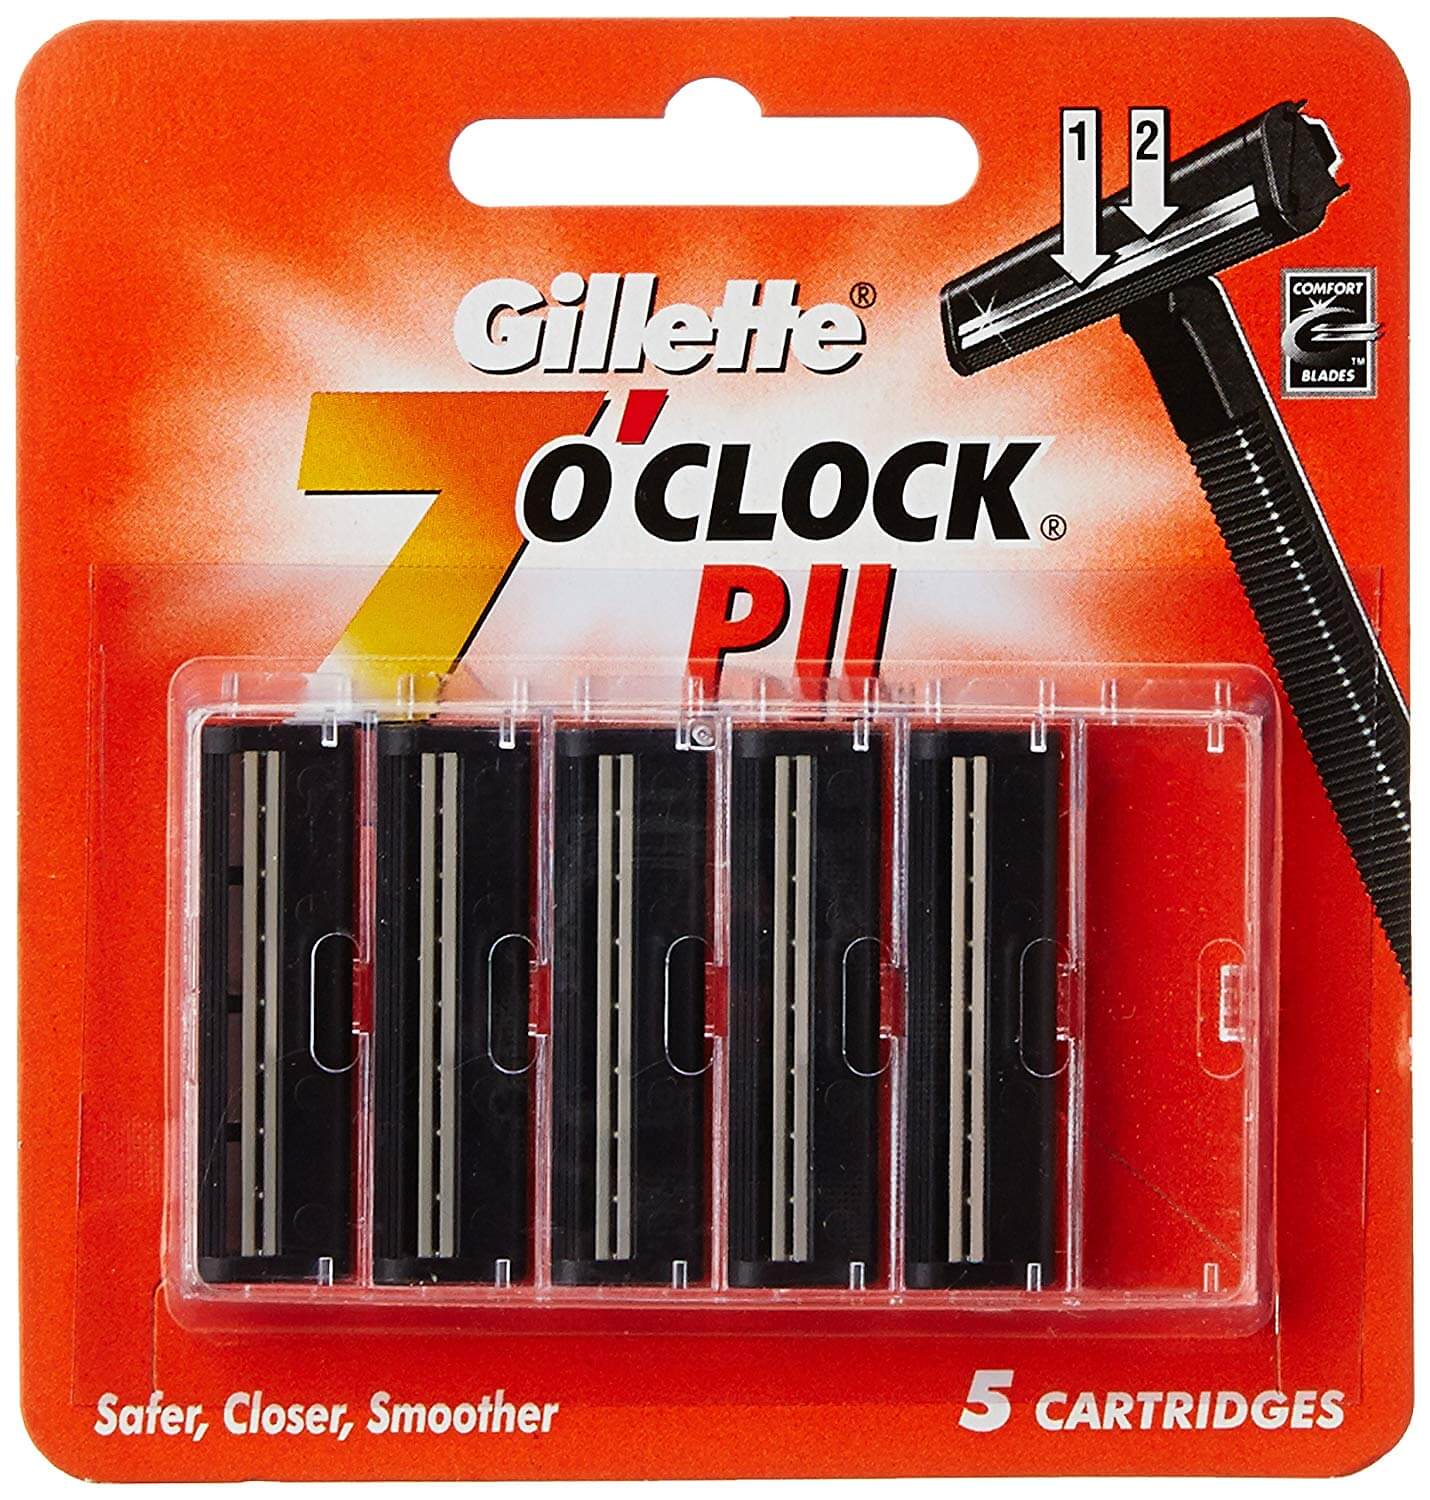 Gillette 7'O Clock P II - Twin Blade Cartridge